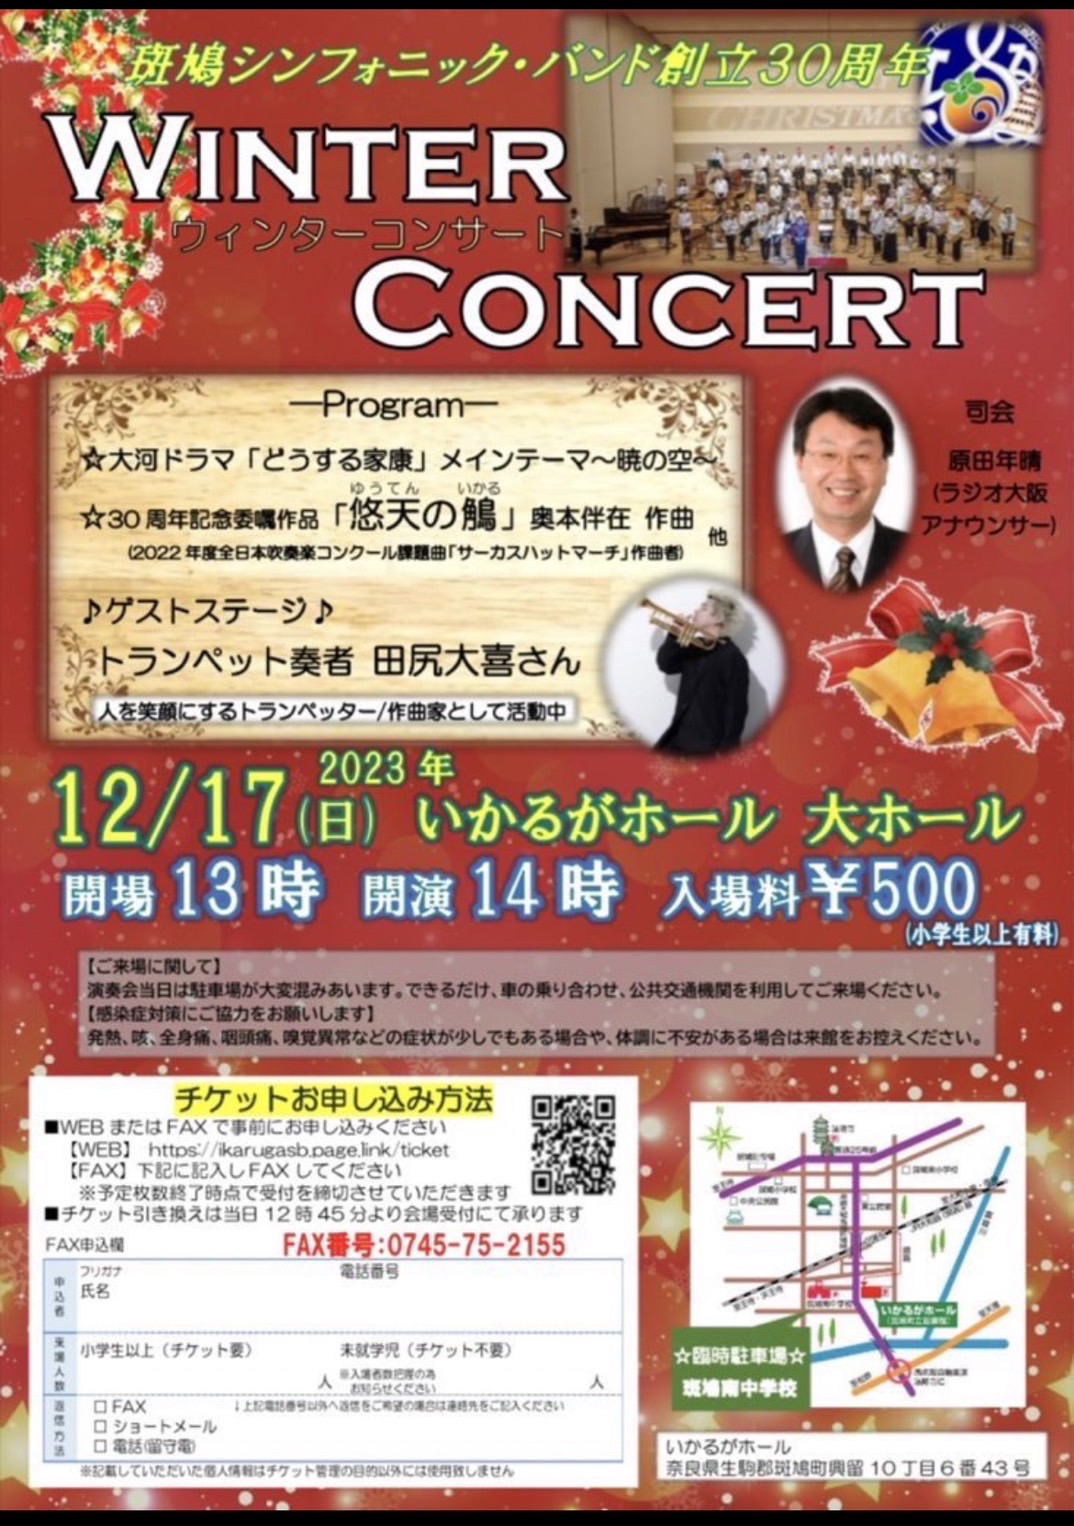 winter concert in 斑鳩